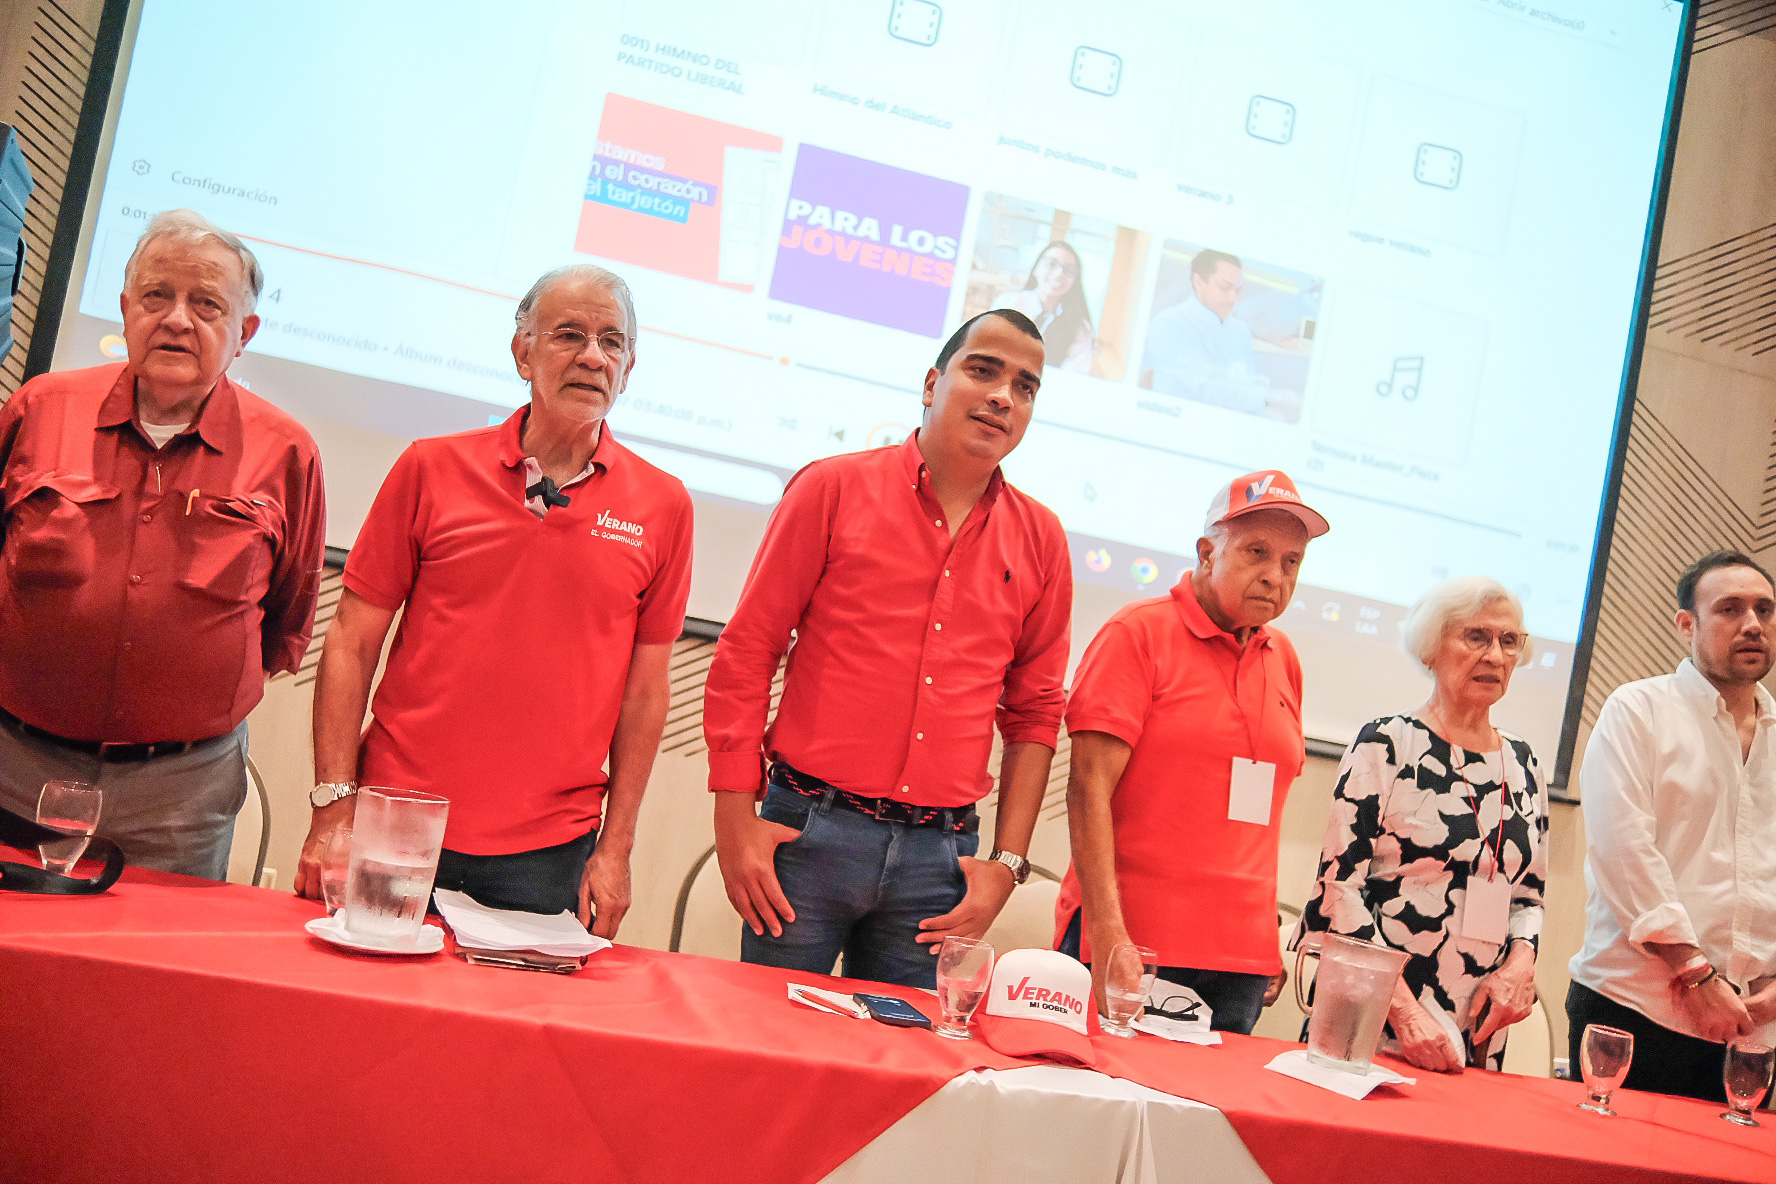 La mesa principal del Partido Liberal en el encuentro en Barranquilla